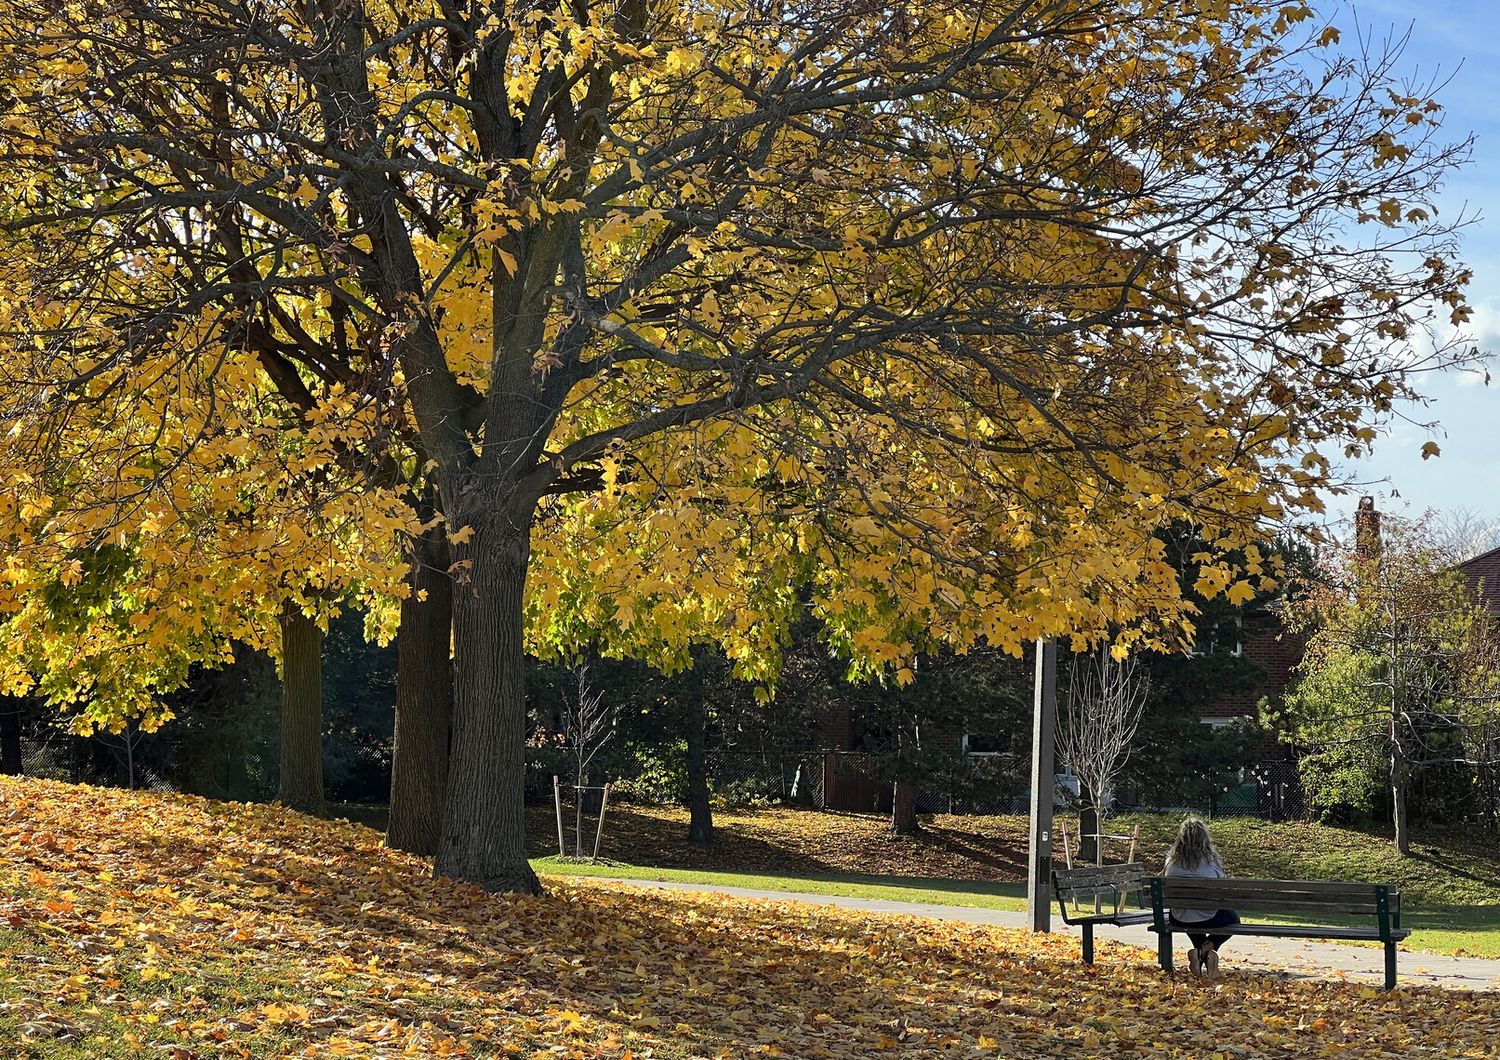 Foglie sugli alberi a Toronto in un novembre insolitamente caldo